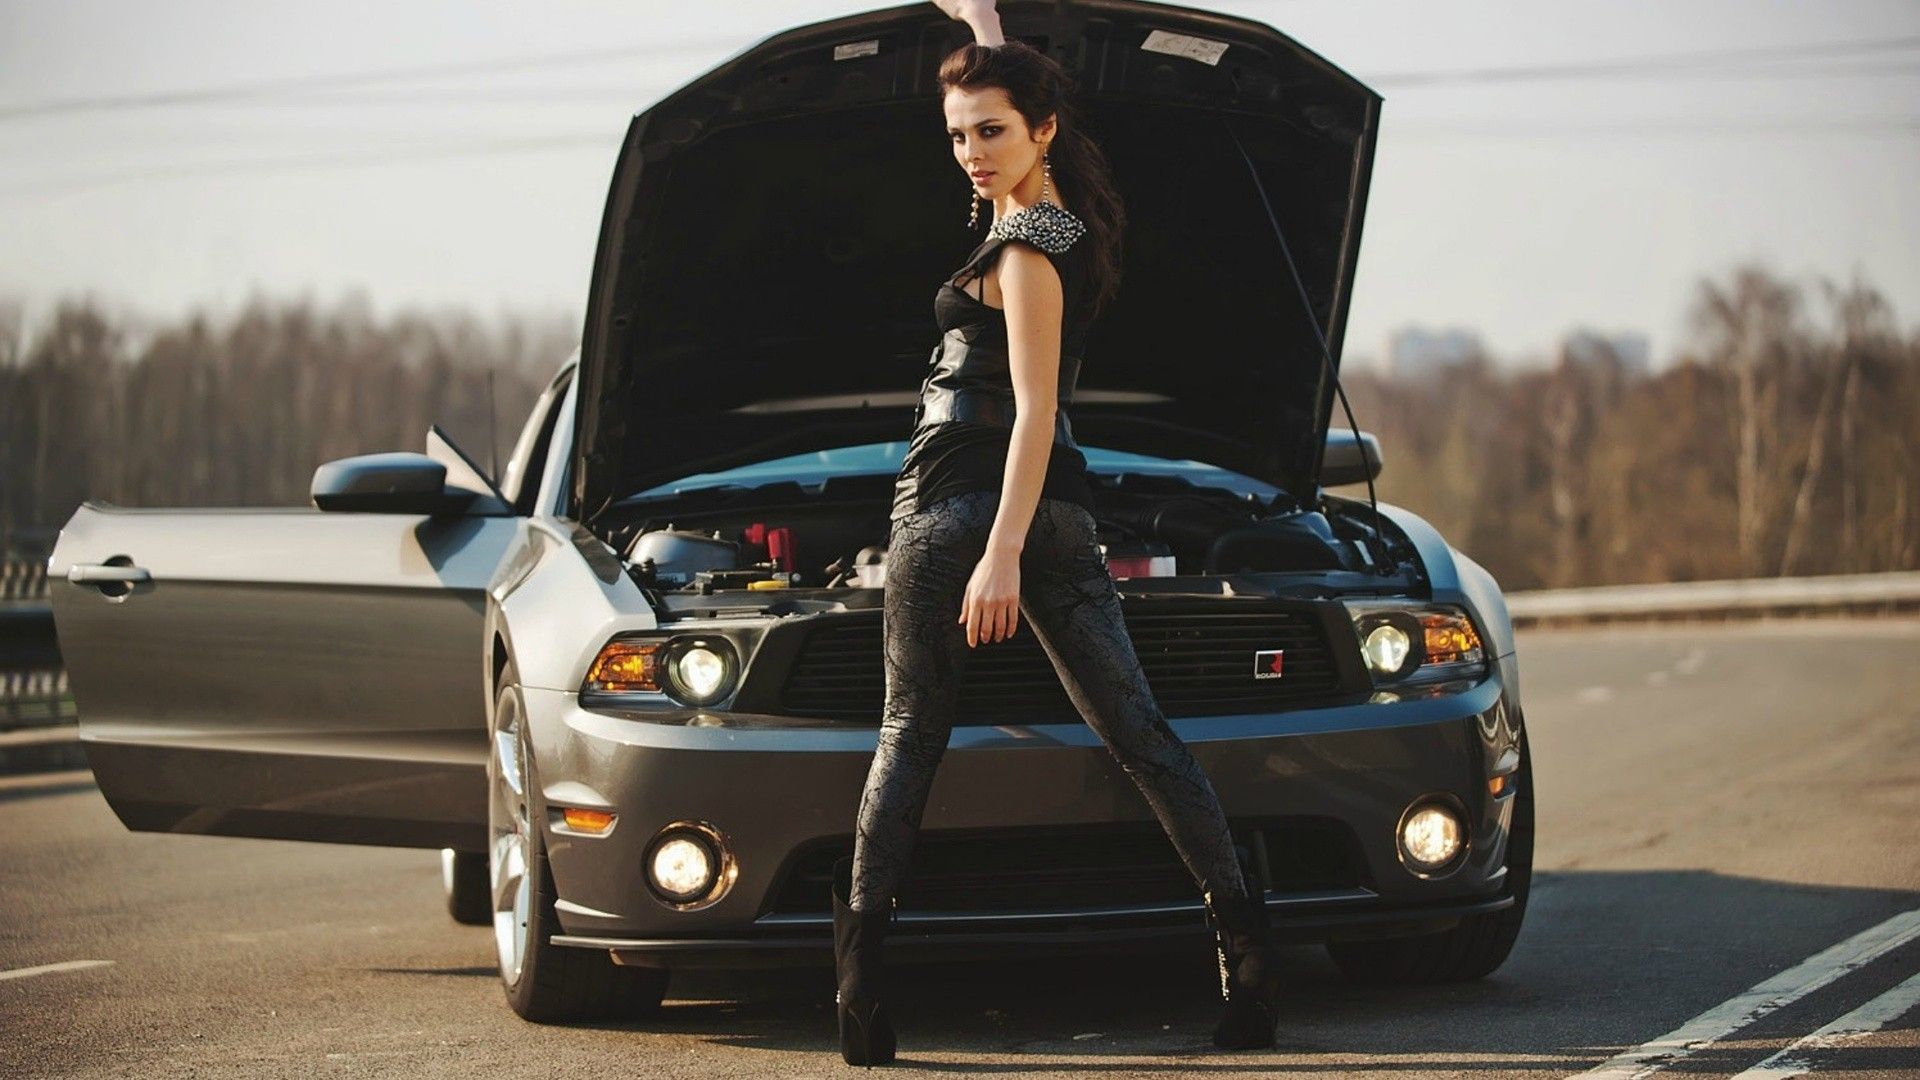 Mustang girl, Car and girl wallpaper .com